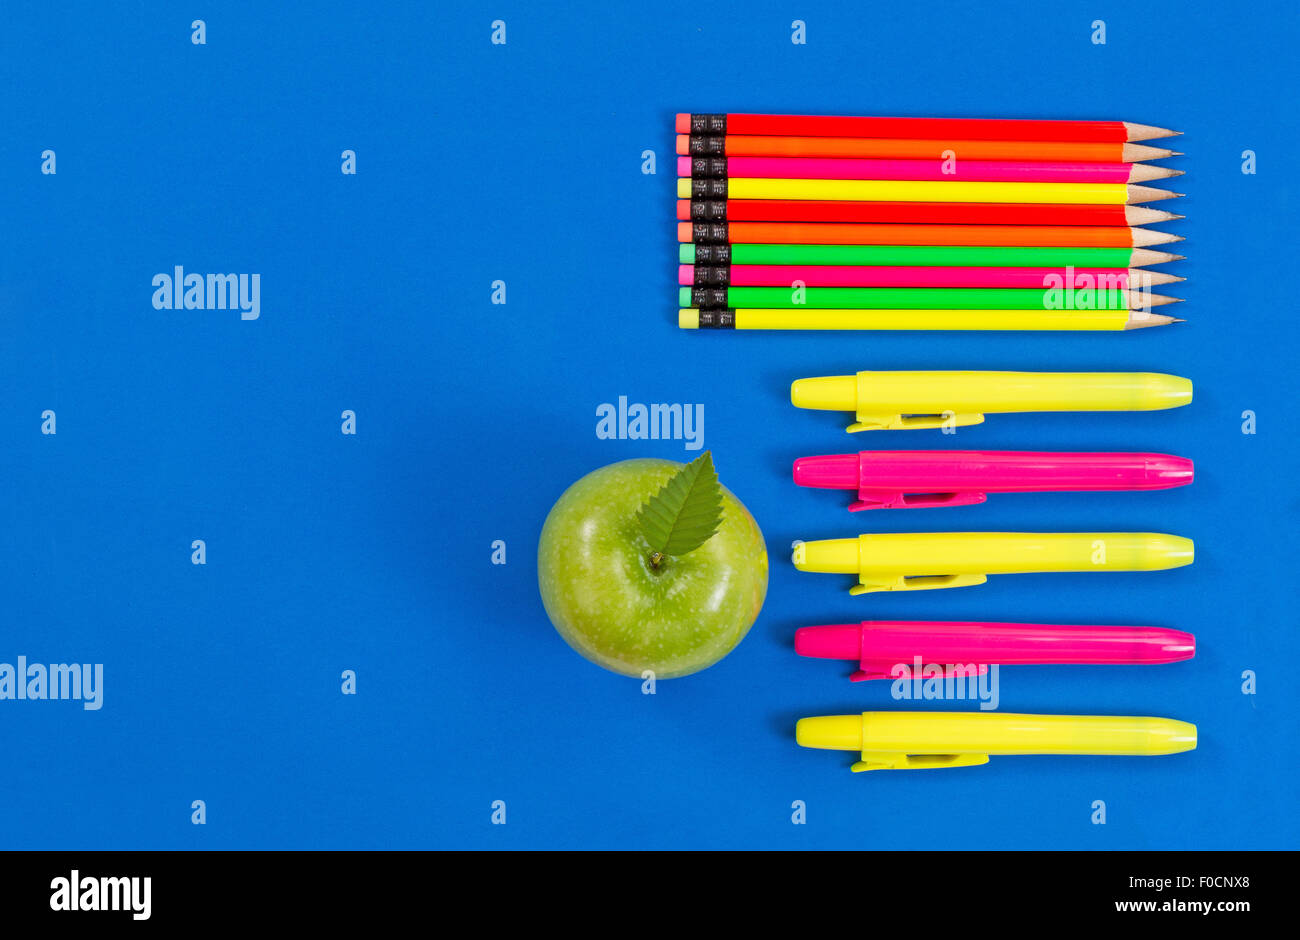 Oficina o back to school suministros consistentes en una manzana verde, resaltar los marcadores y lápices de colores sobre fondo azul. Foto de stock